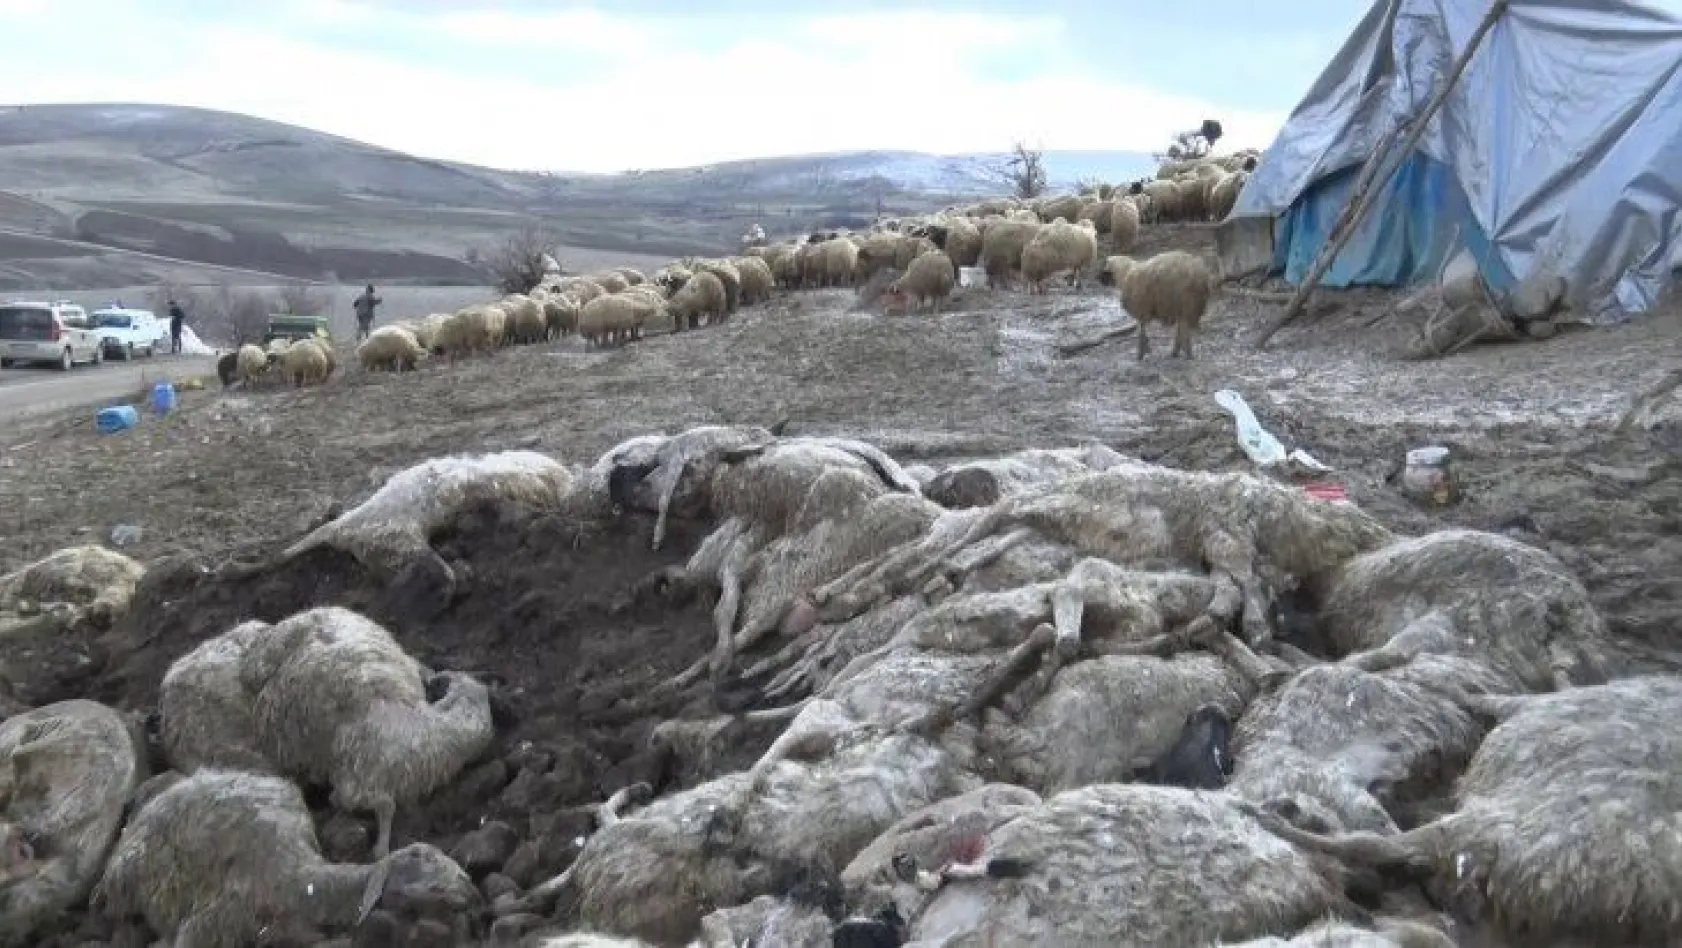 Elazığ'da çiçek hastalığı, 600'den fazla koyun telef oldu